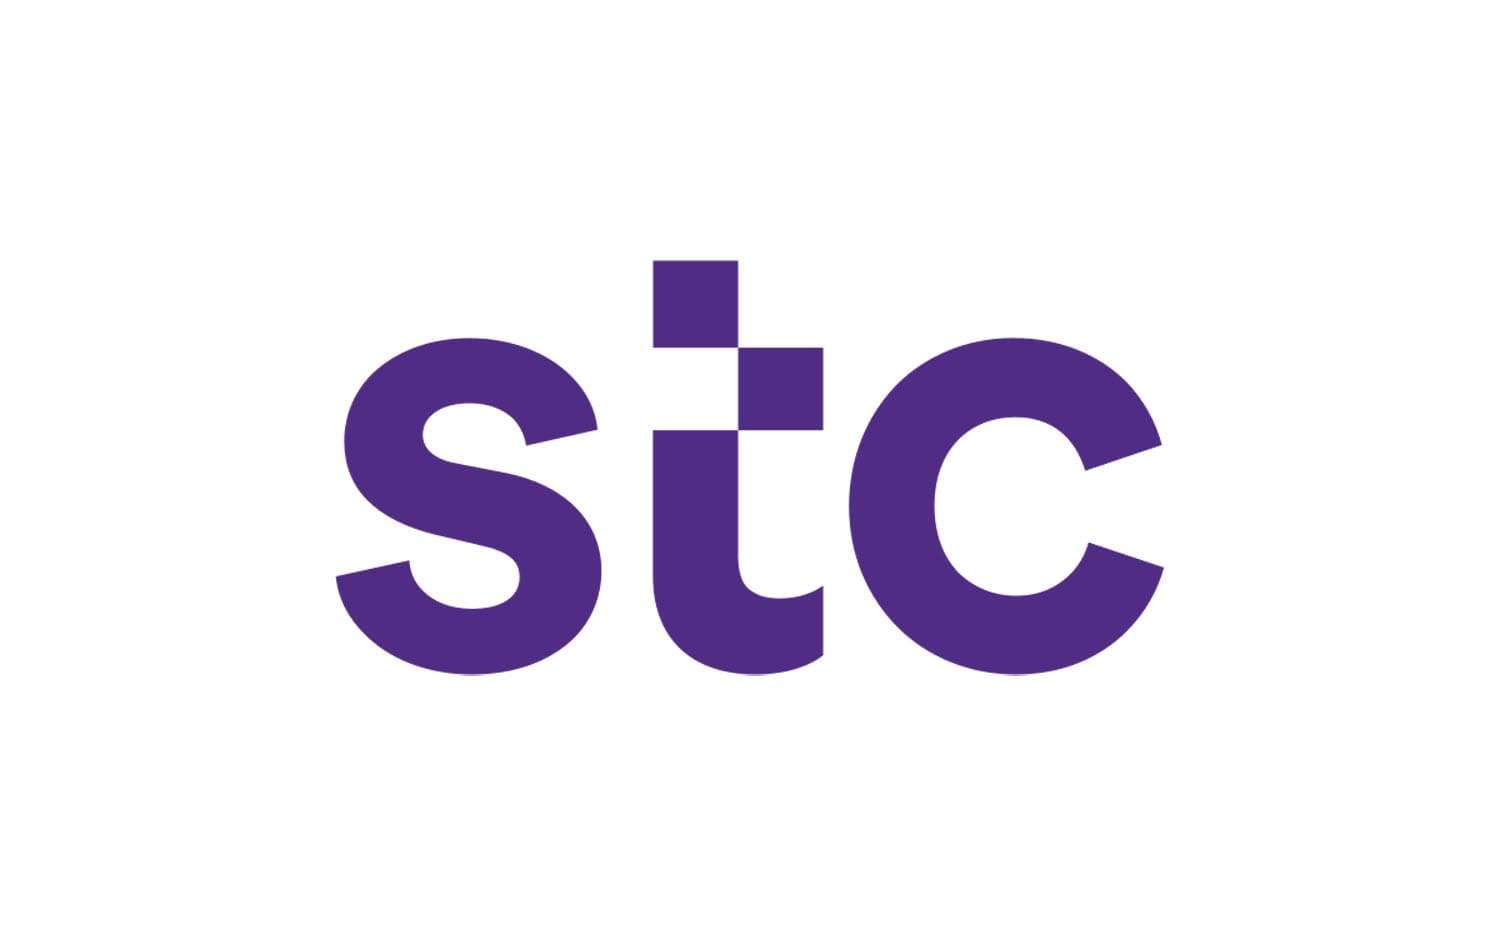 STC-Logo